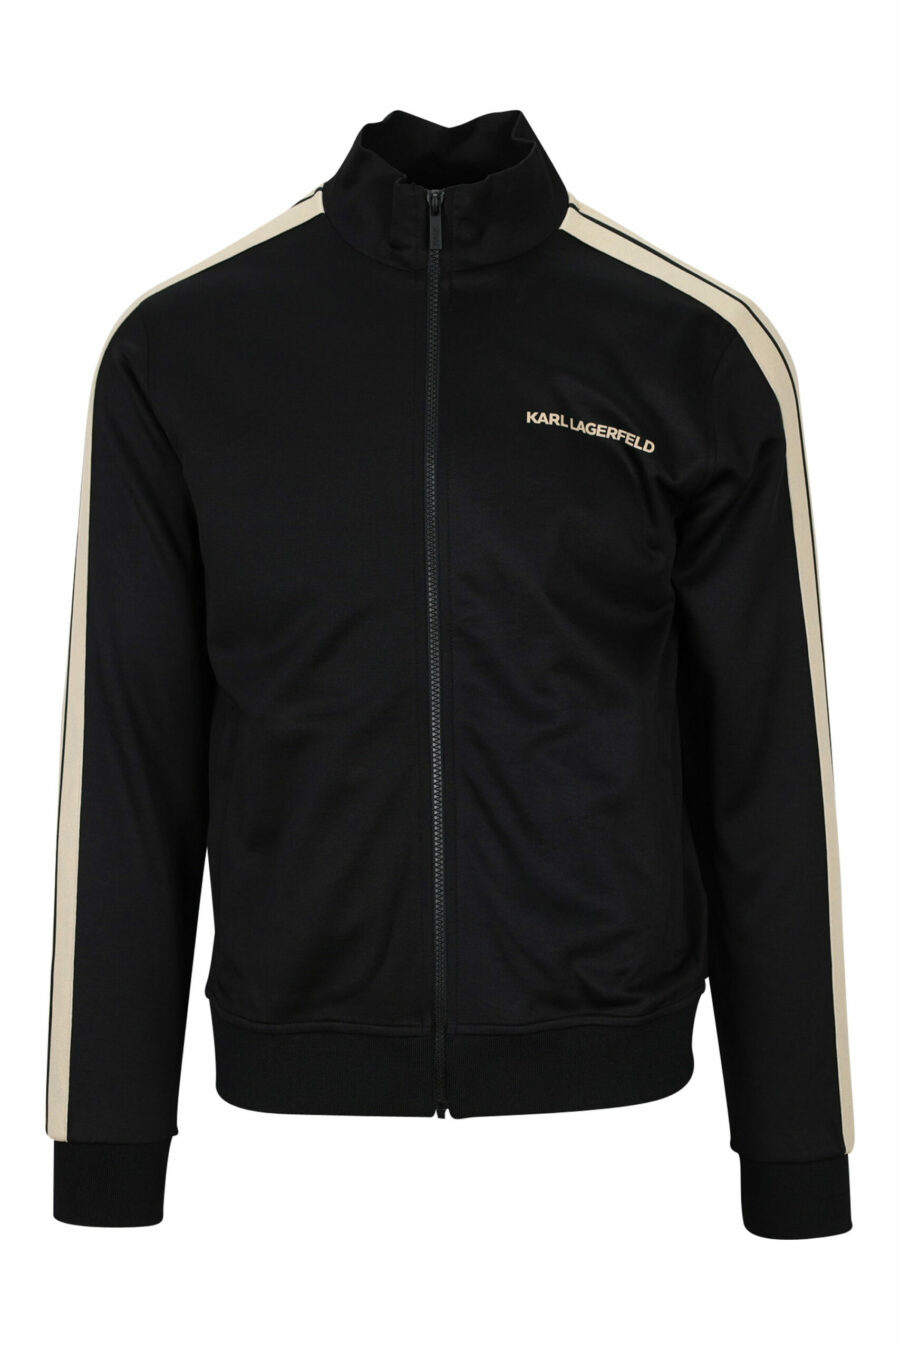 Schwarzes Sweatshirt mit Reißverschluss und Minilogue und beigen Seitenstreifen - 4062226394857 skaliert